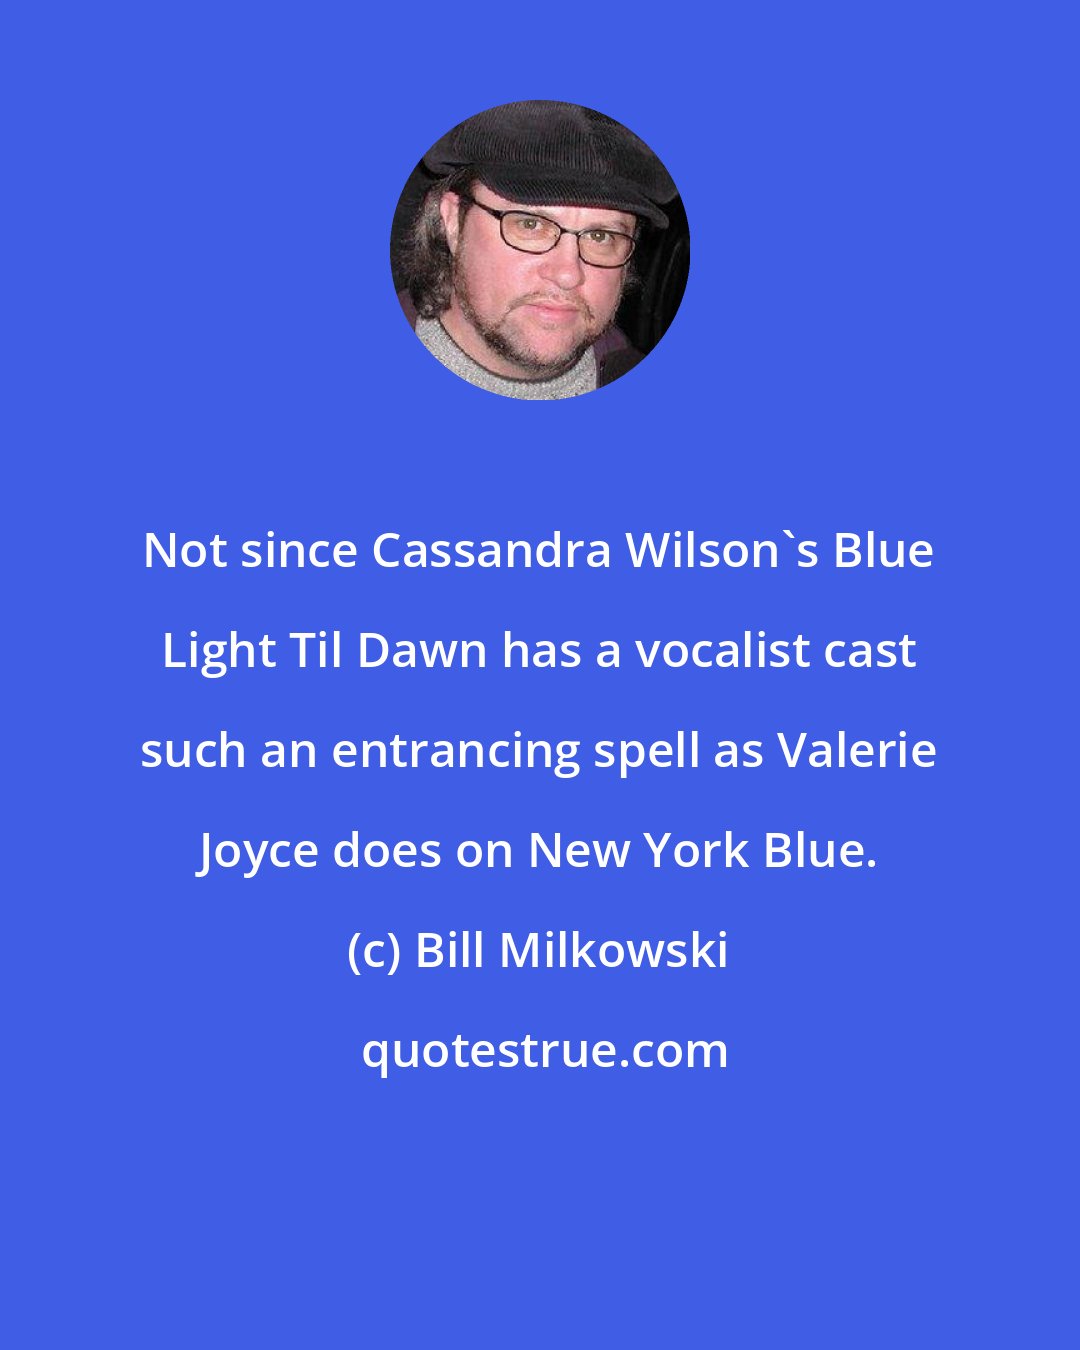 Bill Milkowski: Not since Cassandra Wilson's Blue Light Til Dawn has a vocalist cast such an entrancing spell as Valerie Joyce does on New York Blue.